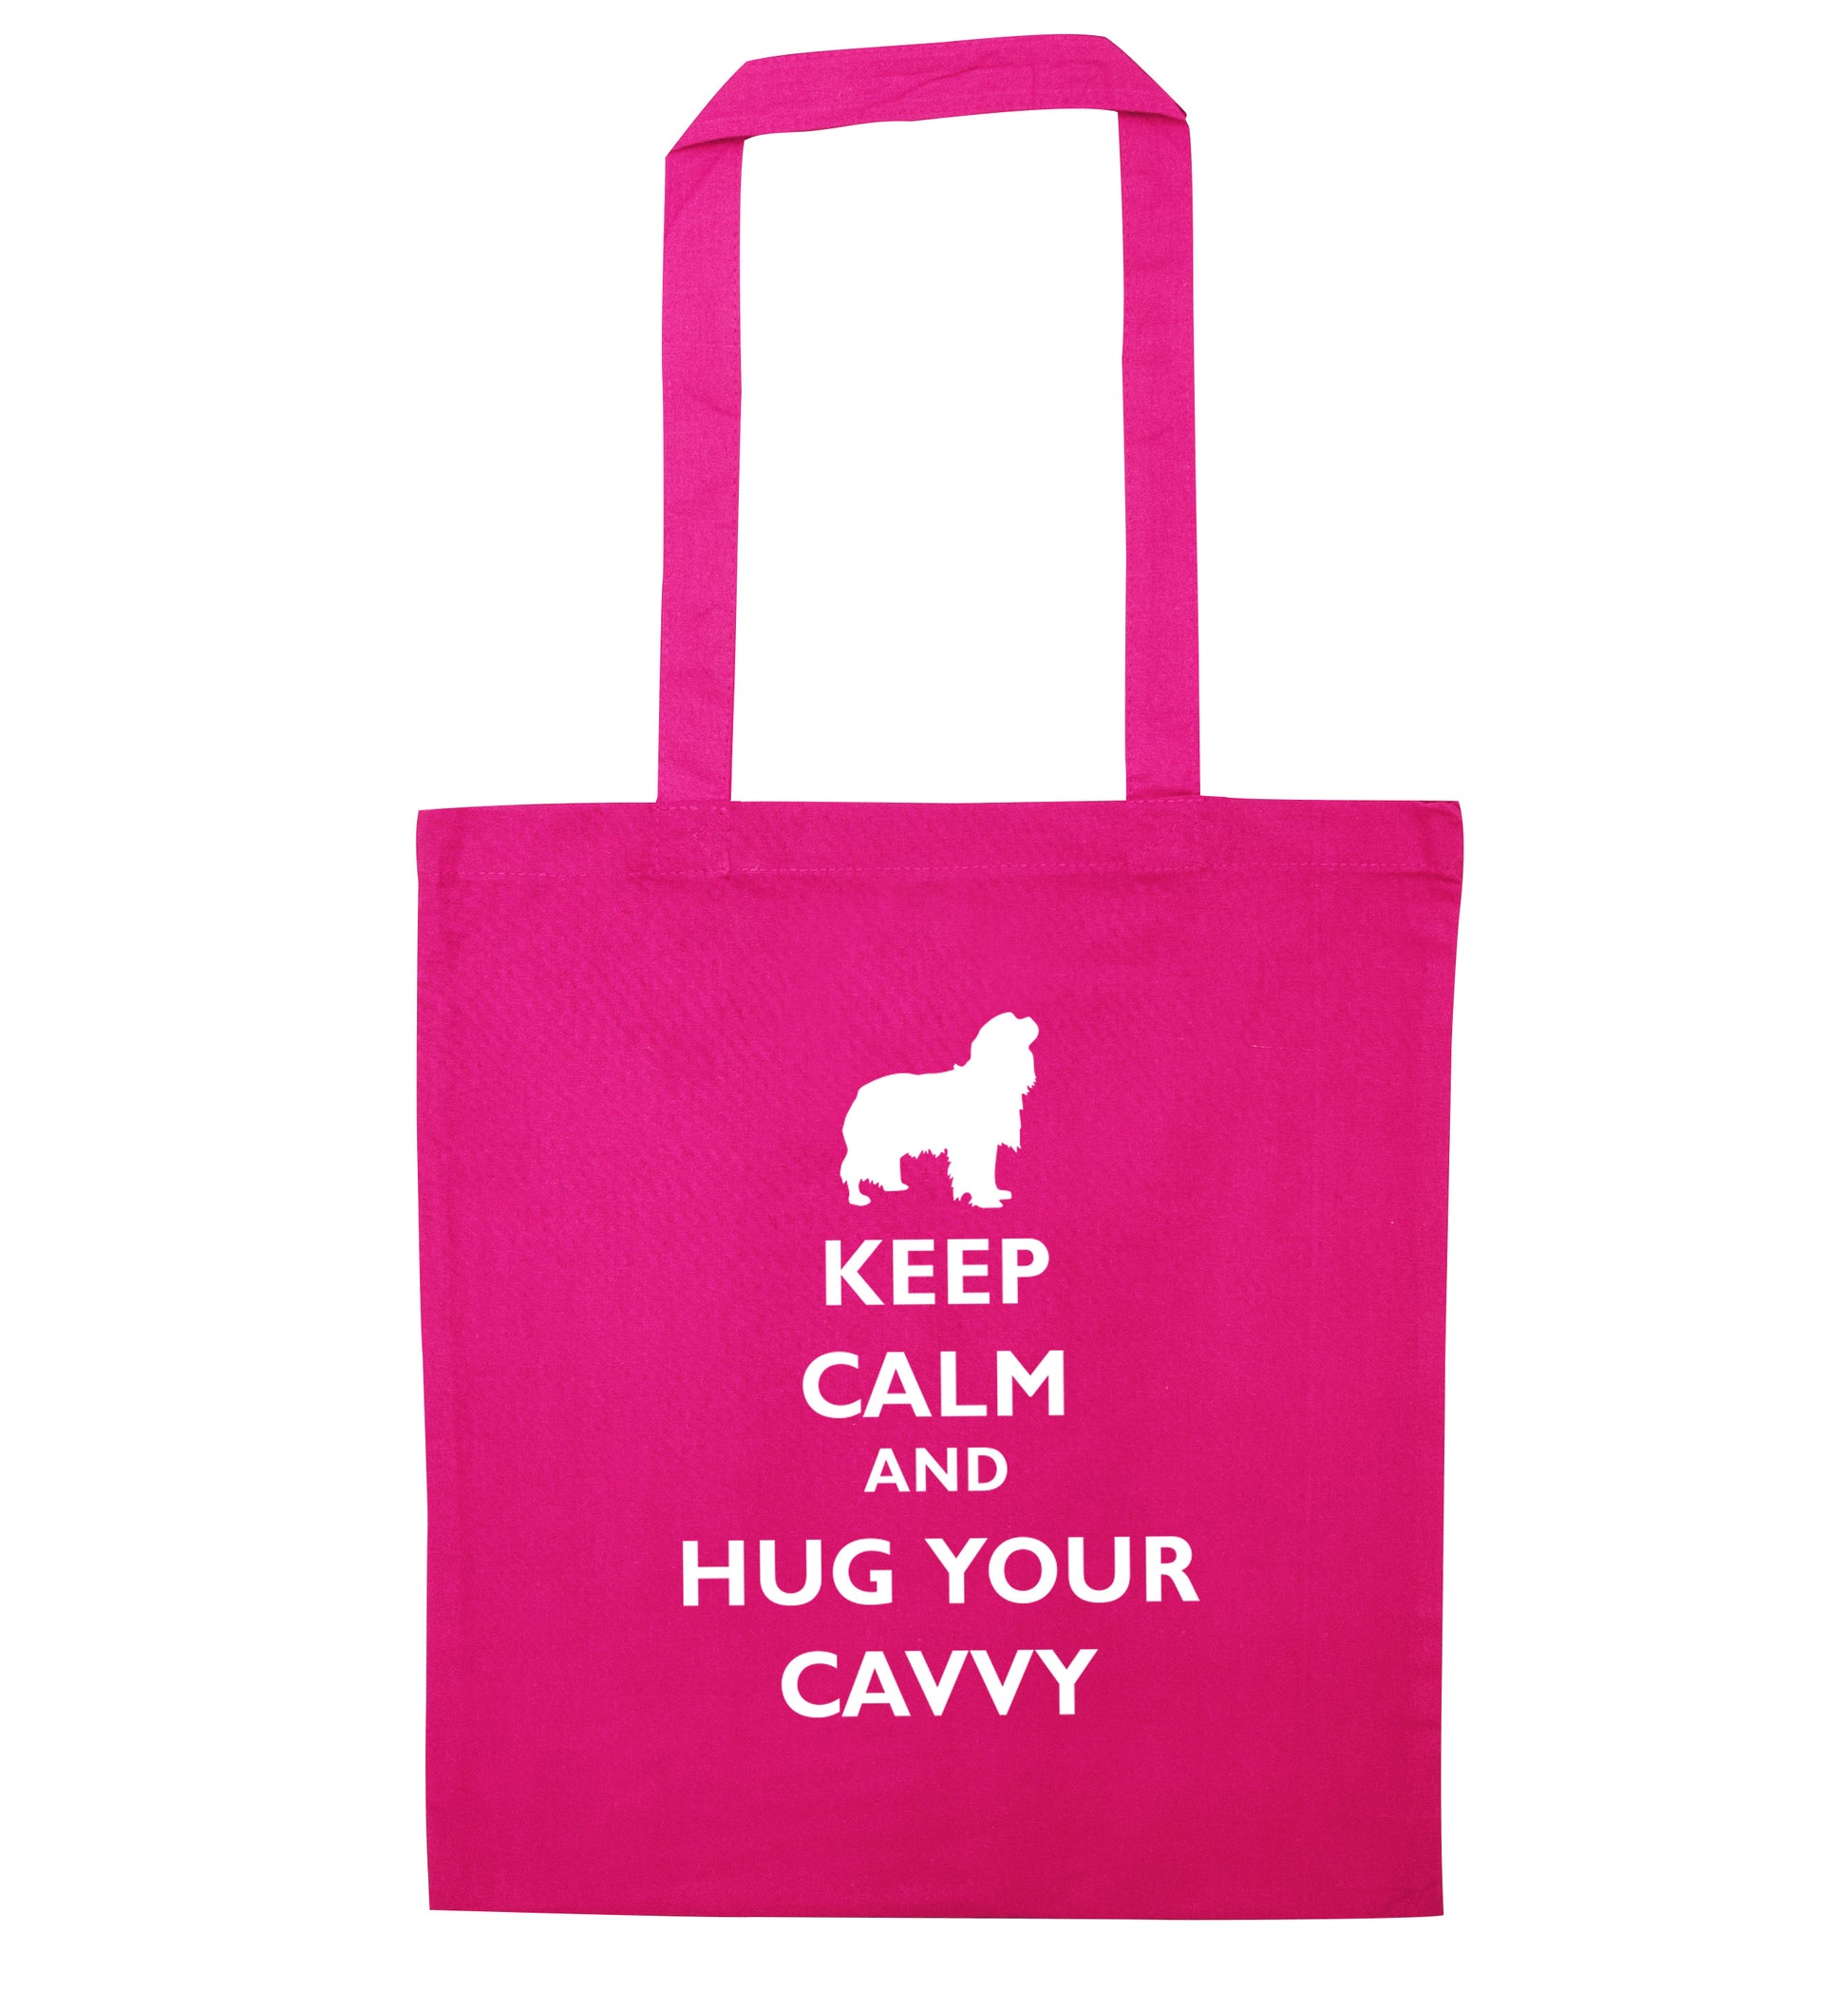 Keep calm and hug your cavvy pink tote bag